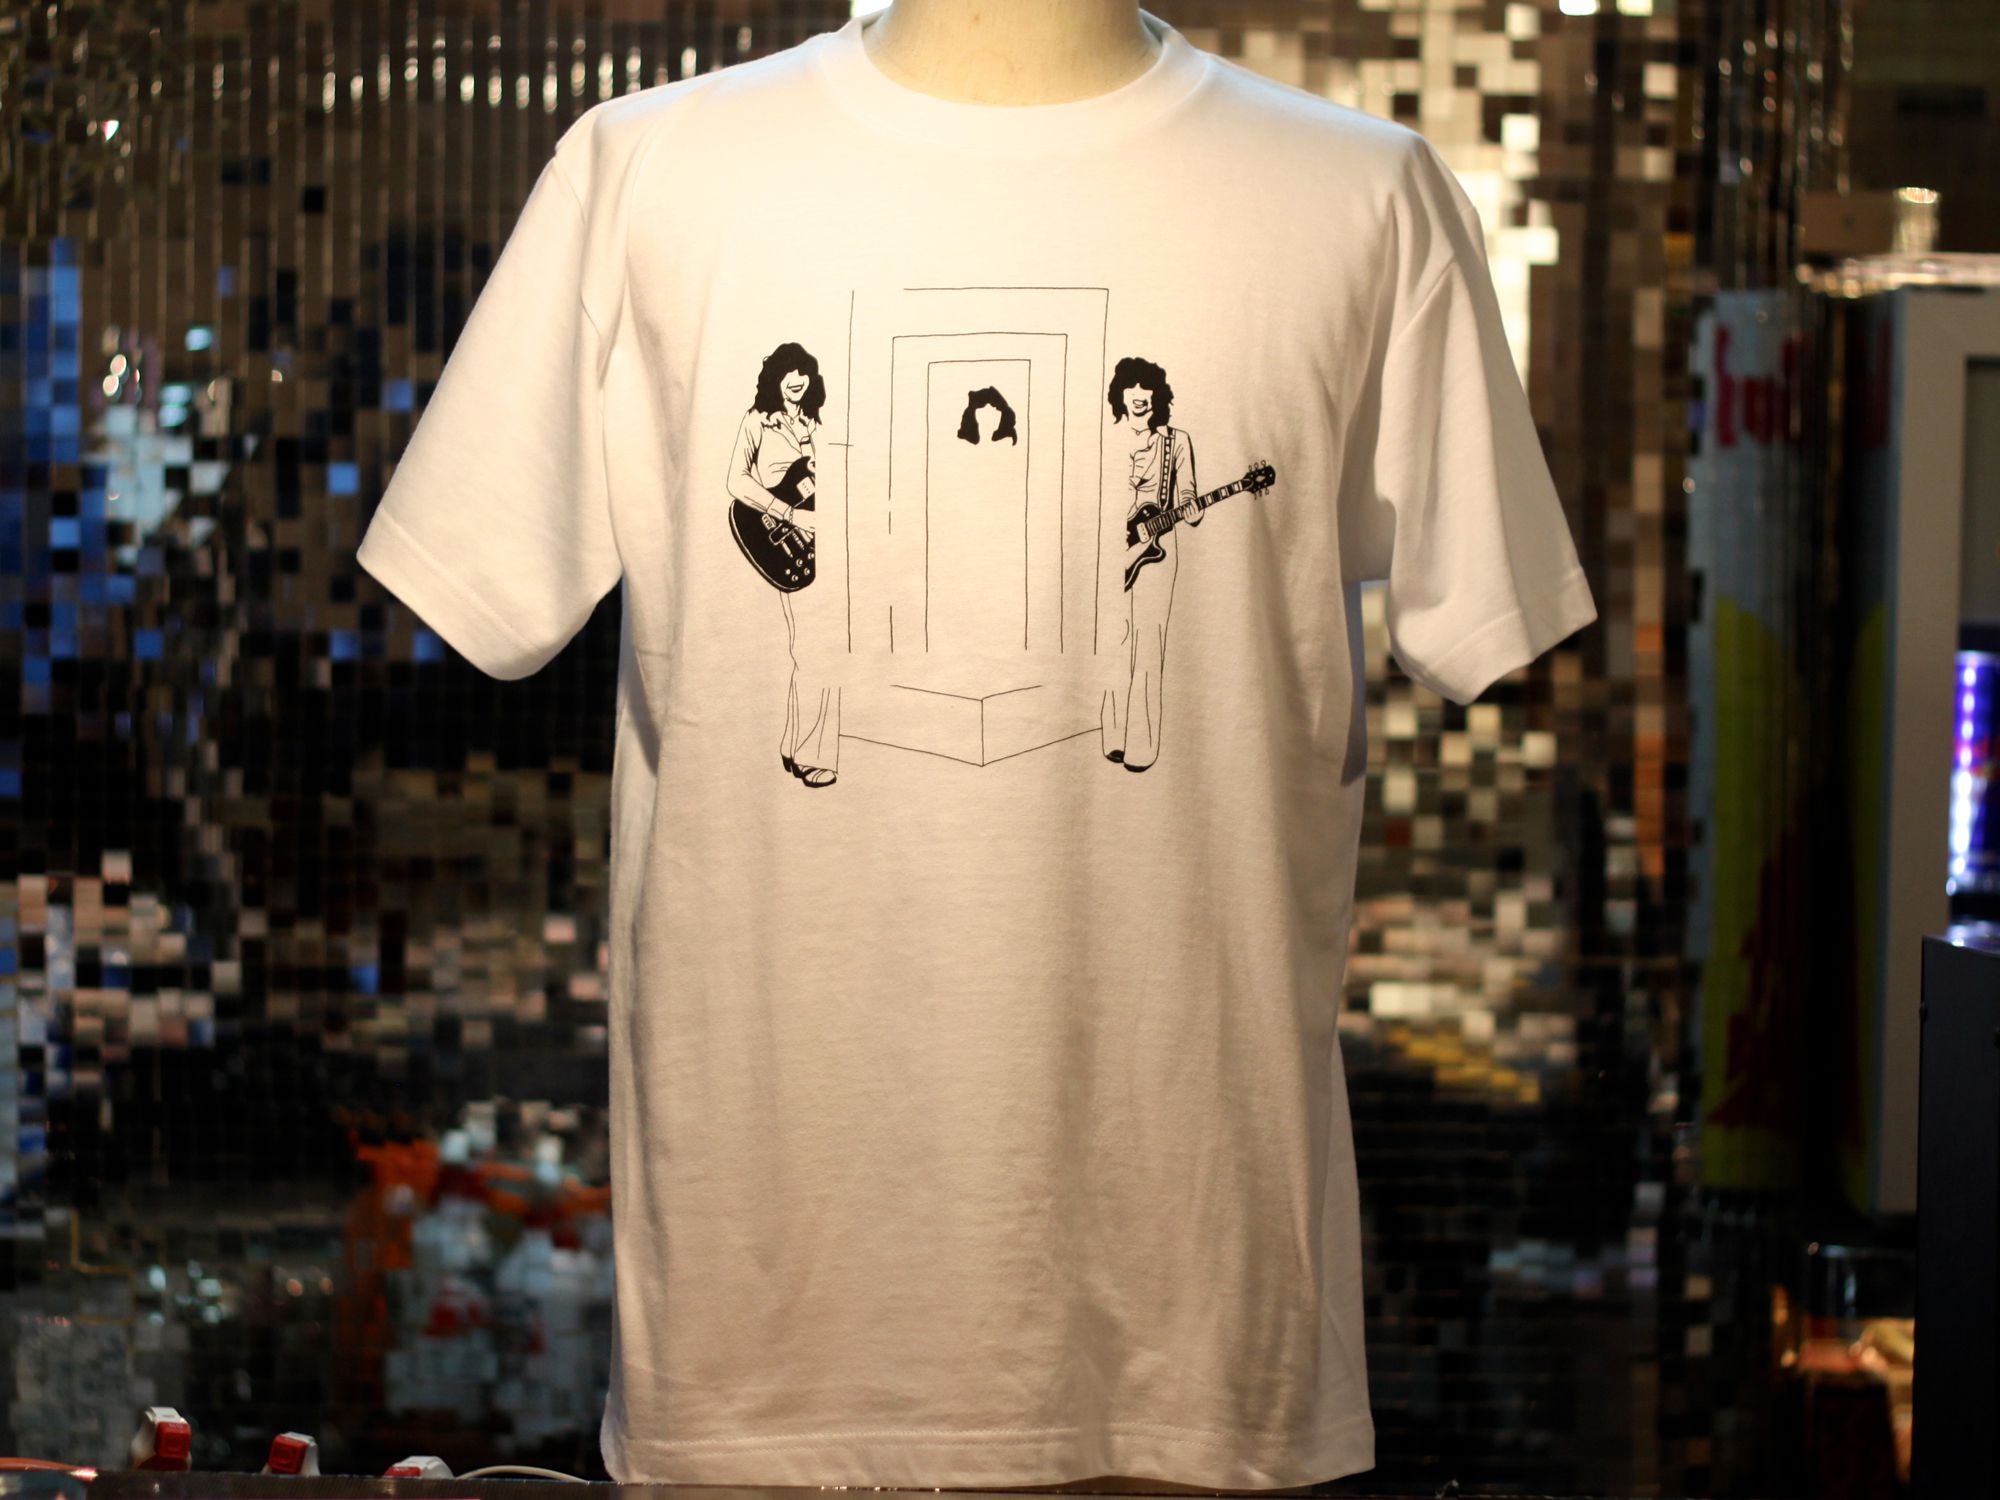 LIQUIDROOM 10周年記念スペシャルTシャツ、五木田智央、坂本慎太郎、古田泰子（TOGA）によるデザインを発表！neol.jp